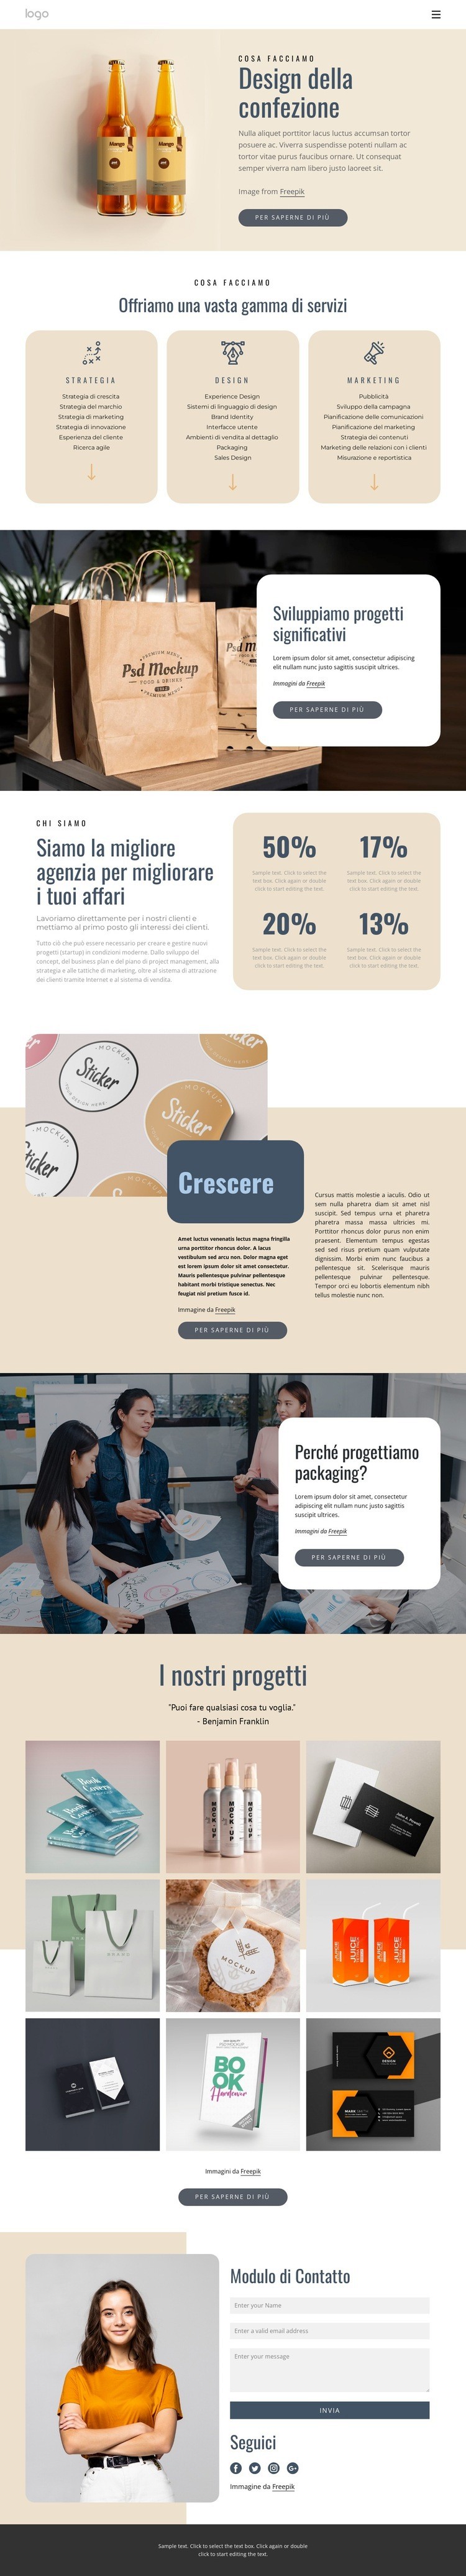 Design del marchio e del packaging Modelli di Website Builder